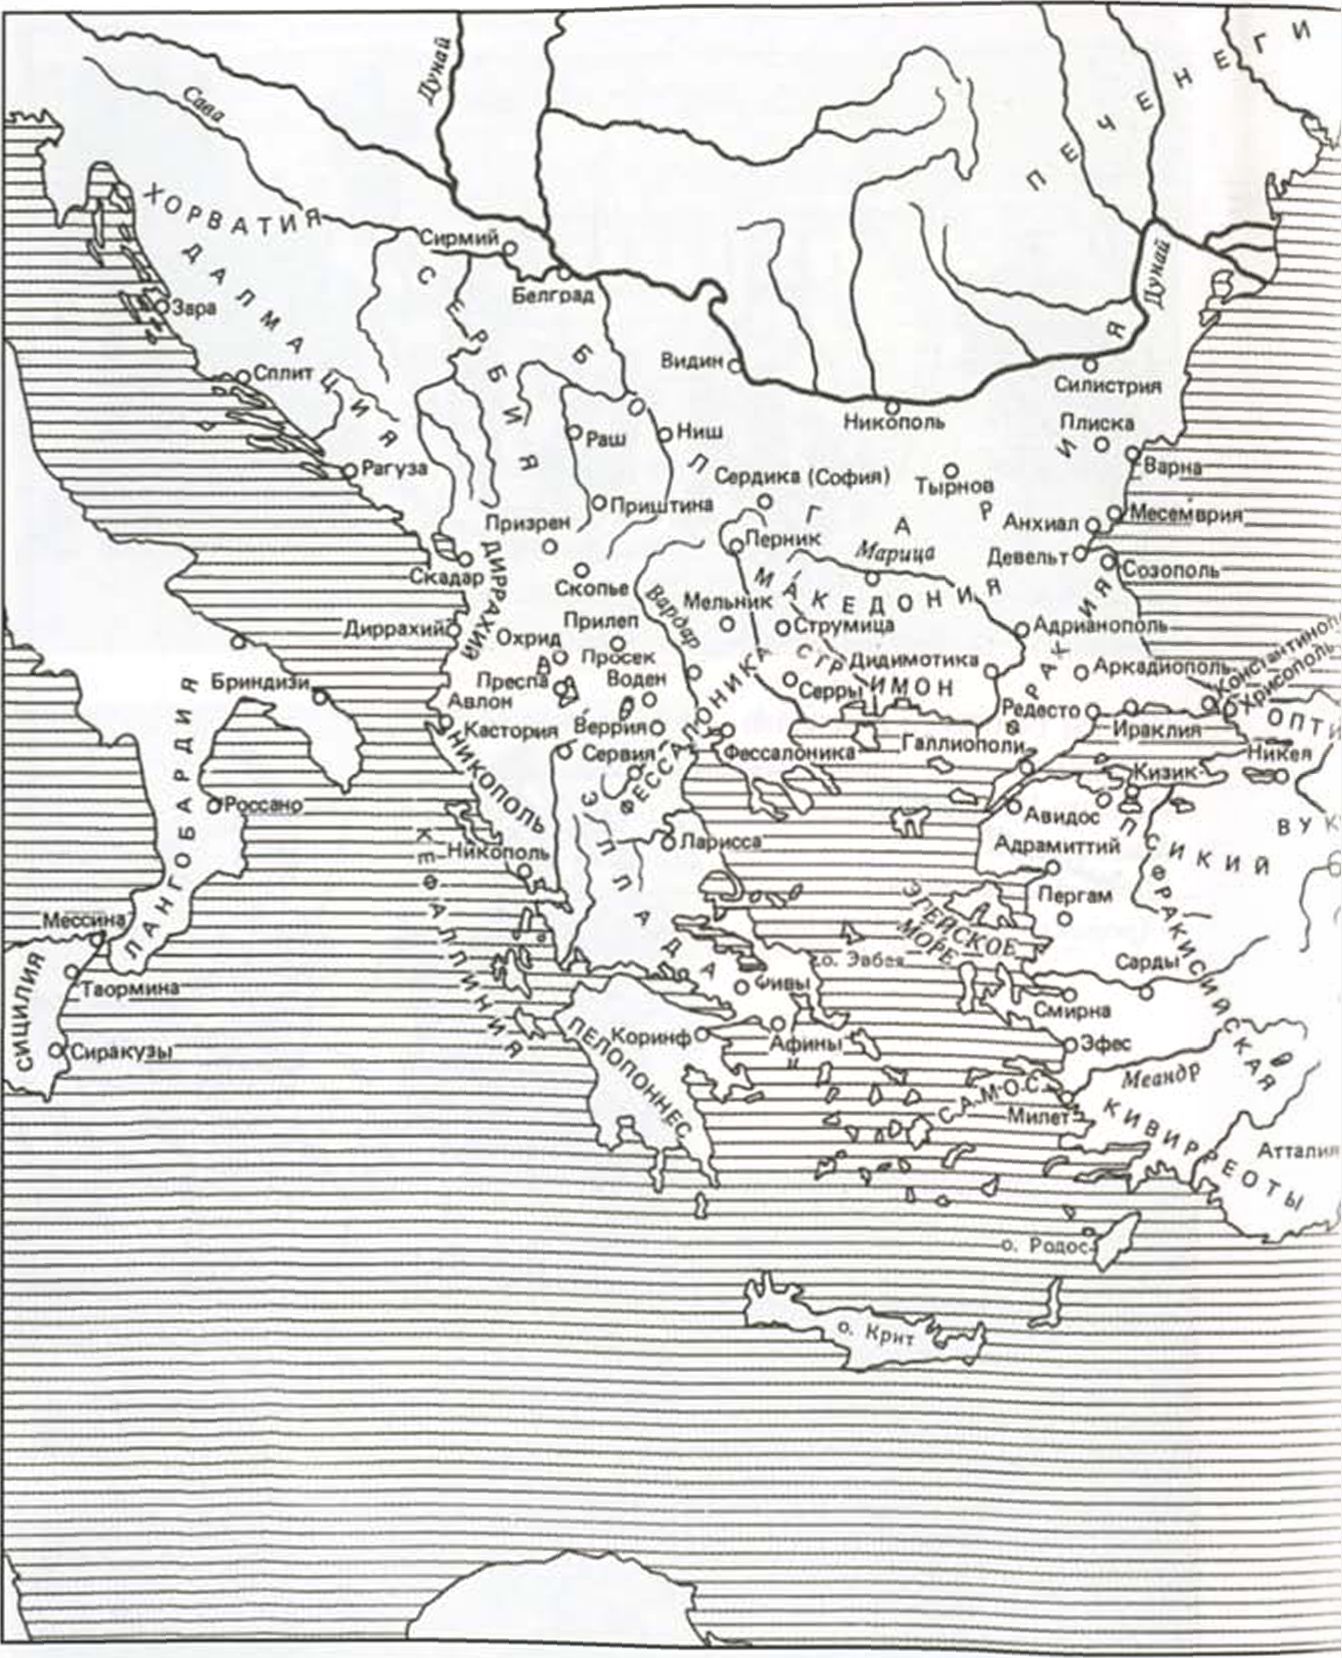 Византийская империя в X веке